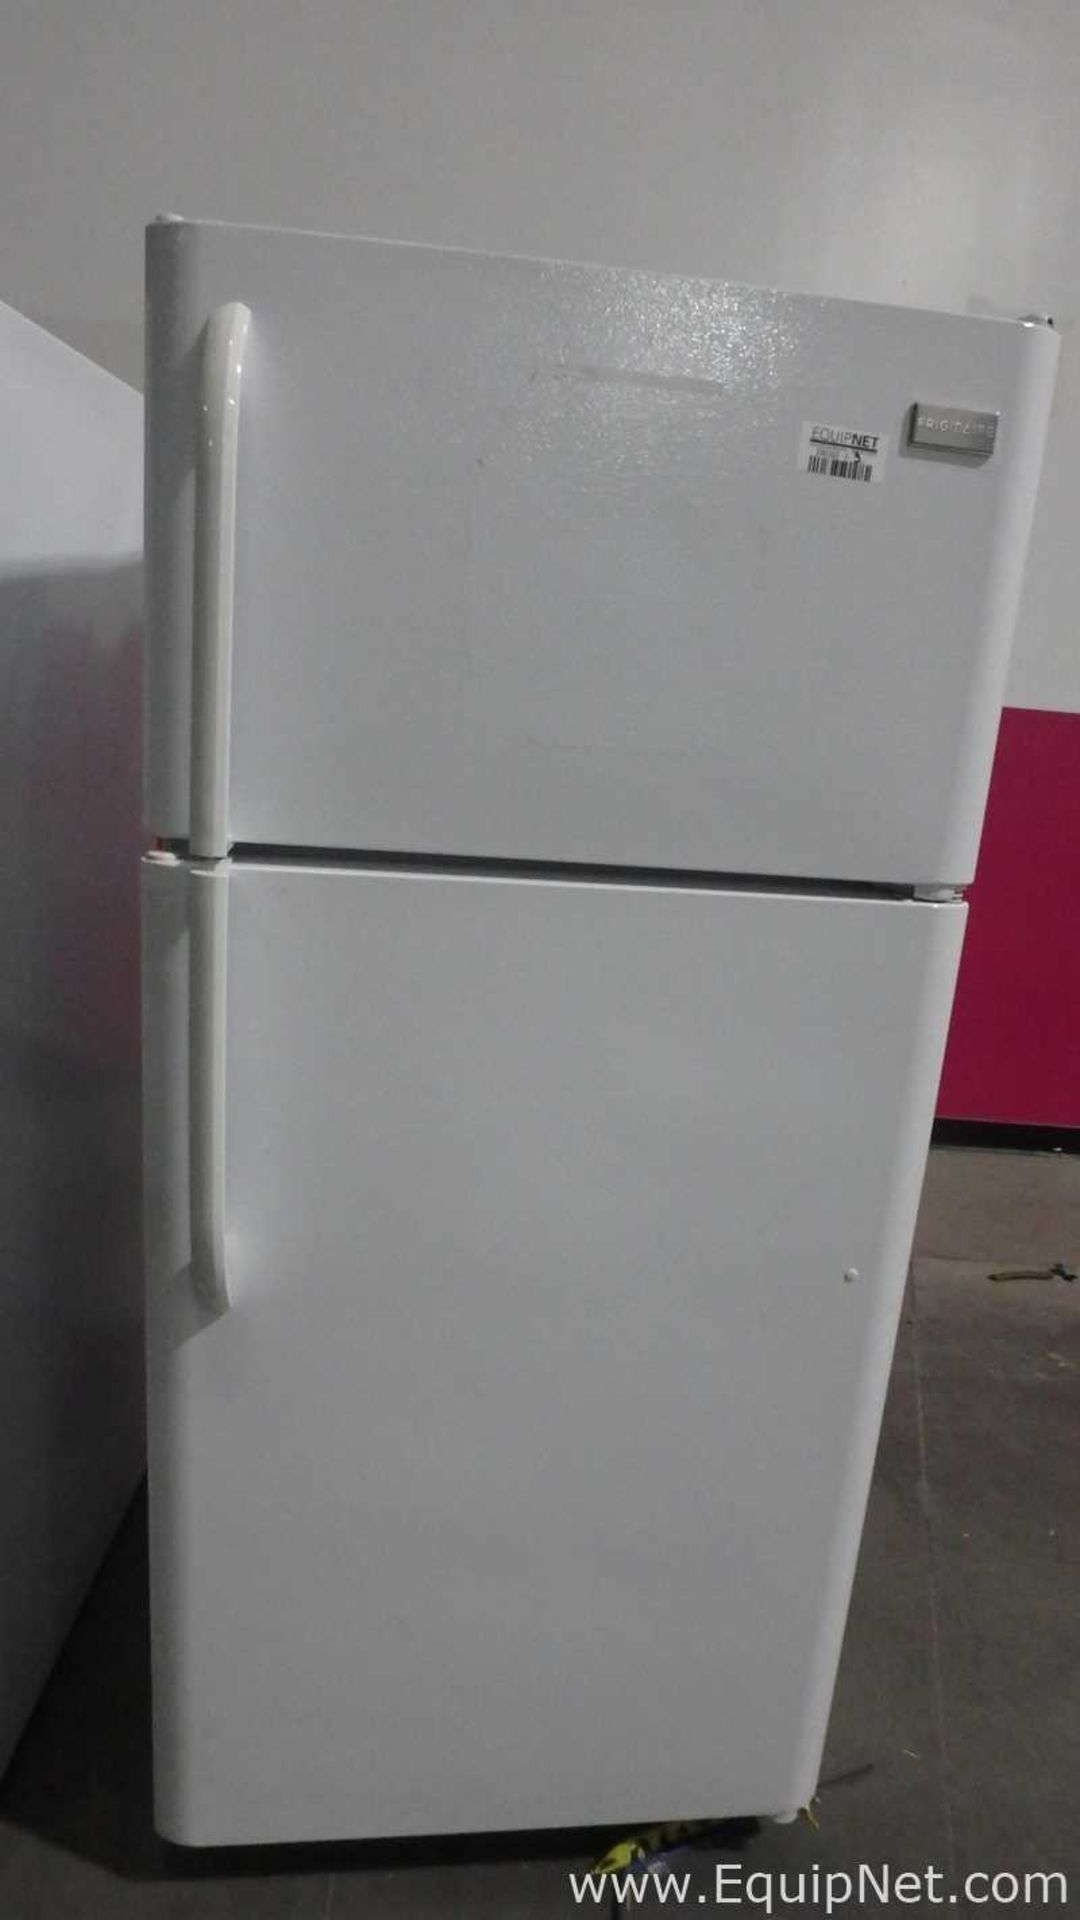 Electrolux FFTR1814QW1 Refrigerator - Image 2 of 24